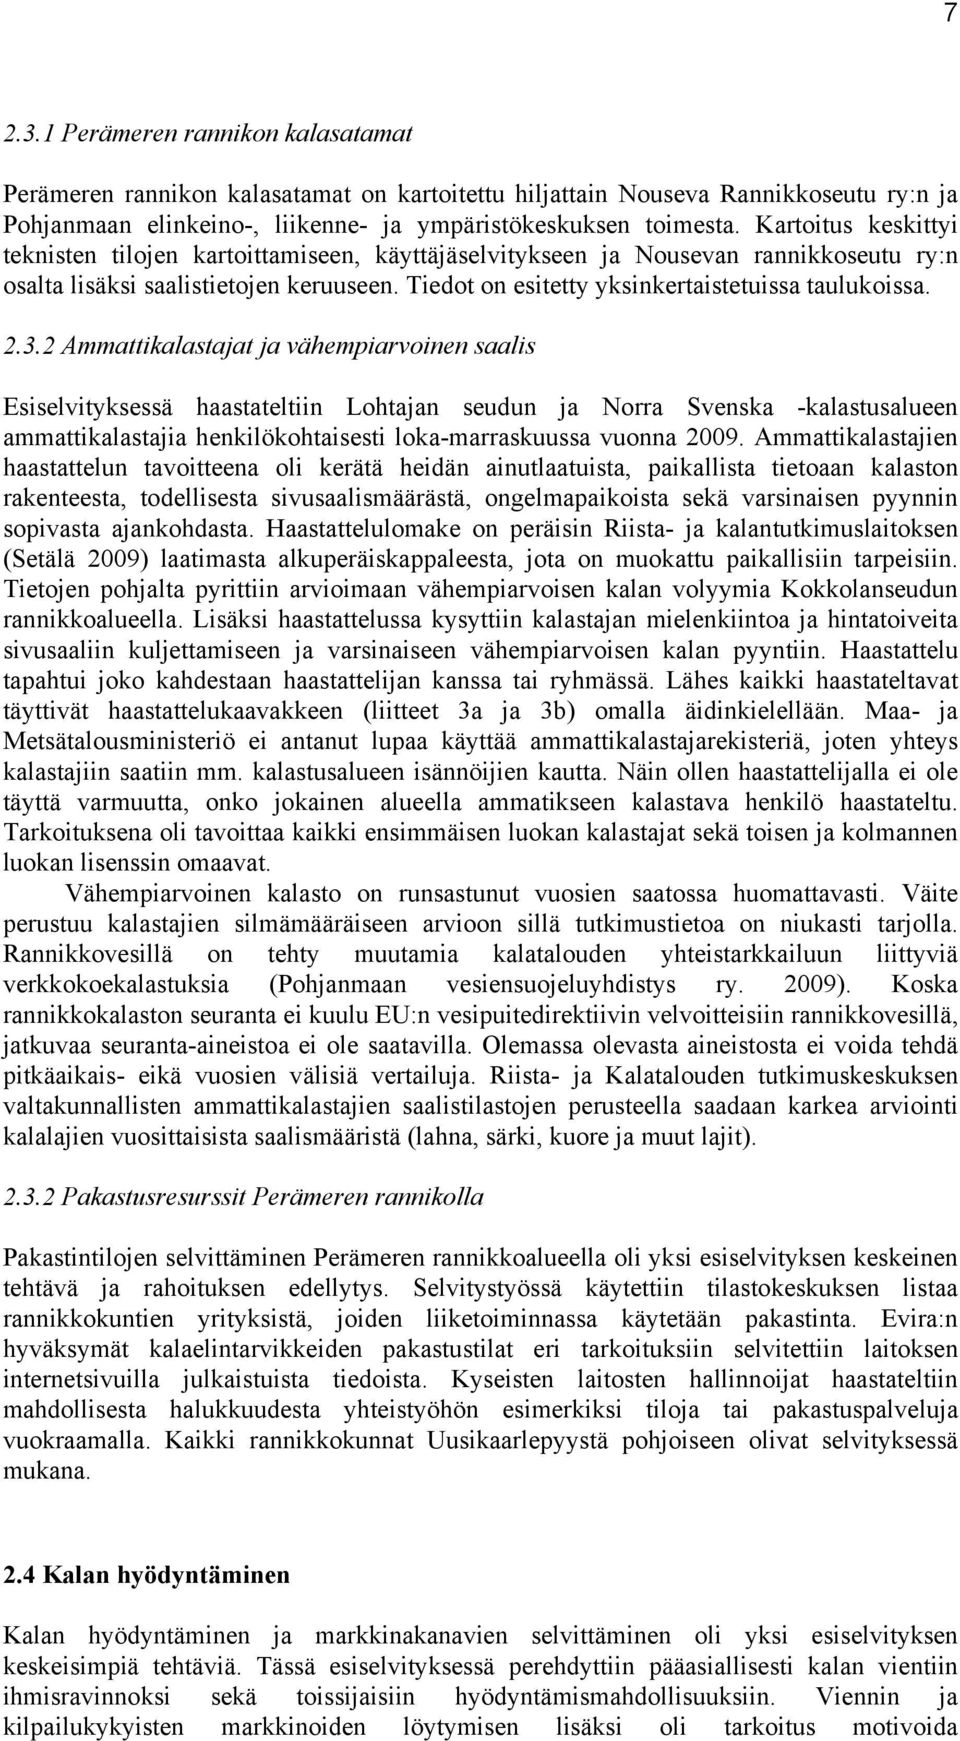 2.3.2 Ammattikalastajat ja vähempiarvoinen saalis Esiselvityksessä haastateltiin Lohtajan seudun ja Norra Svenska -kalastusalueen ammattikalastajia henkilökohtaisesti loka-marraskuussa vuonna 2009.